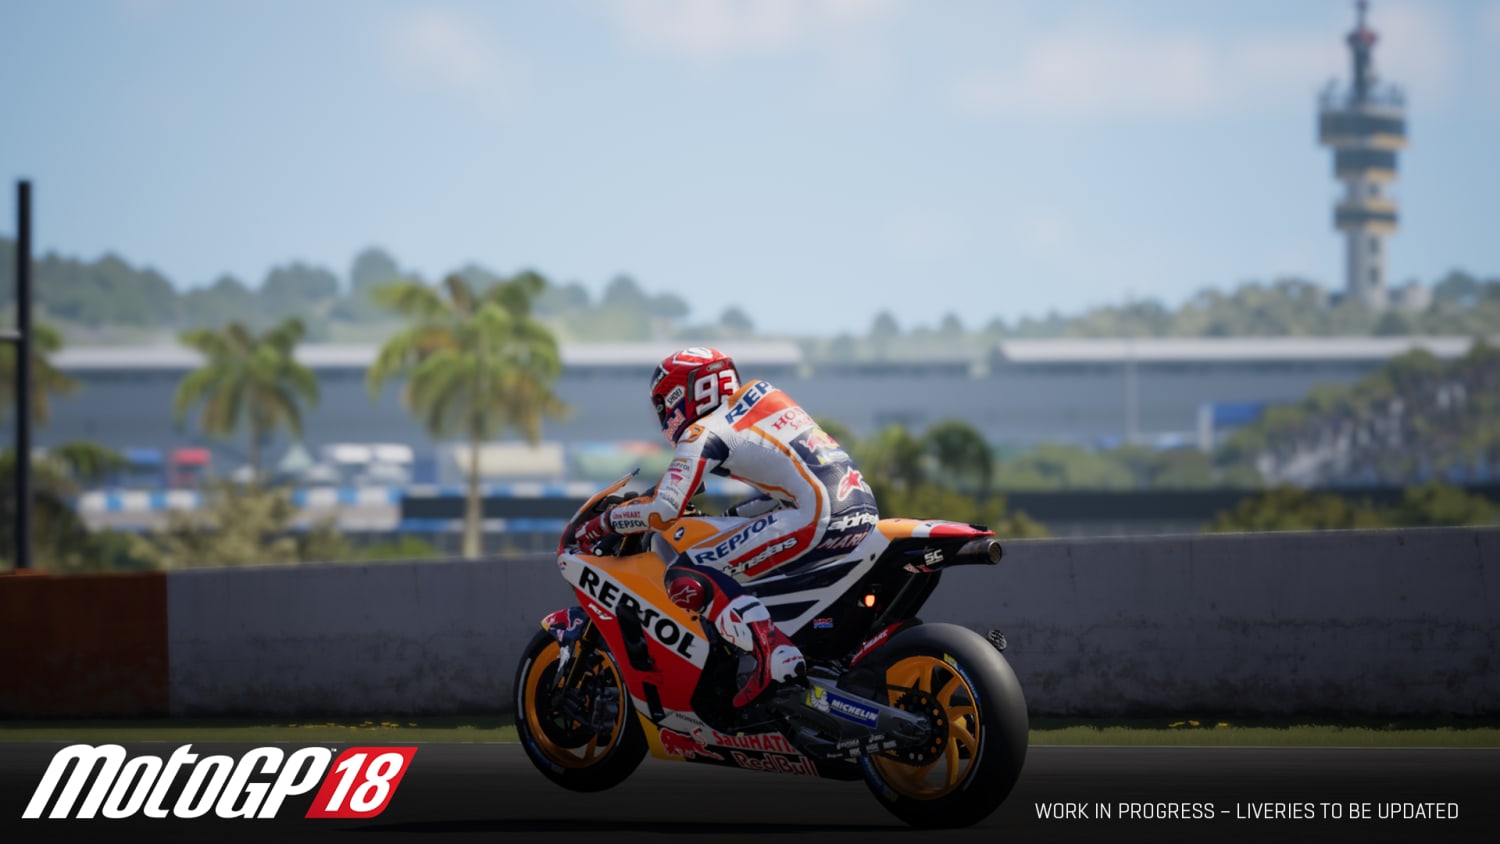 MotoGP 18 7 Tipps und Tricks, wie du das Game gewinnst